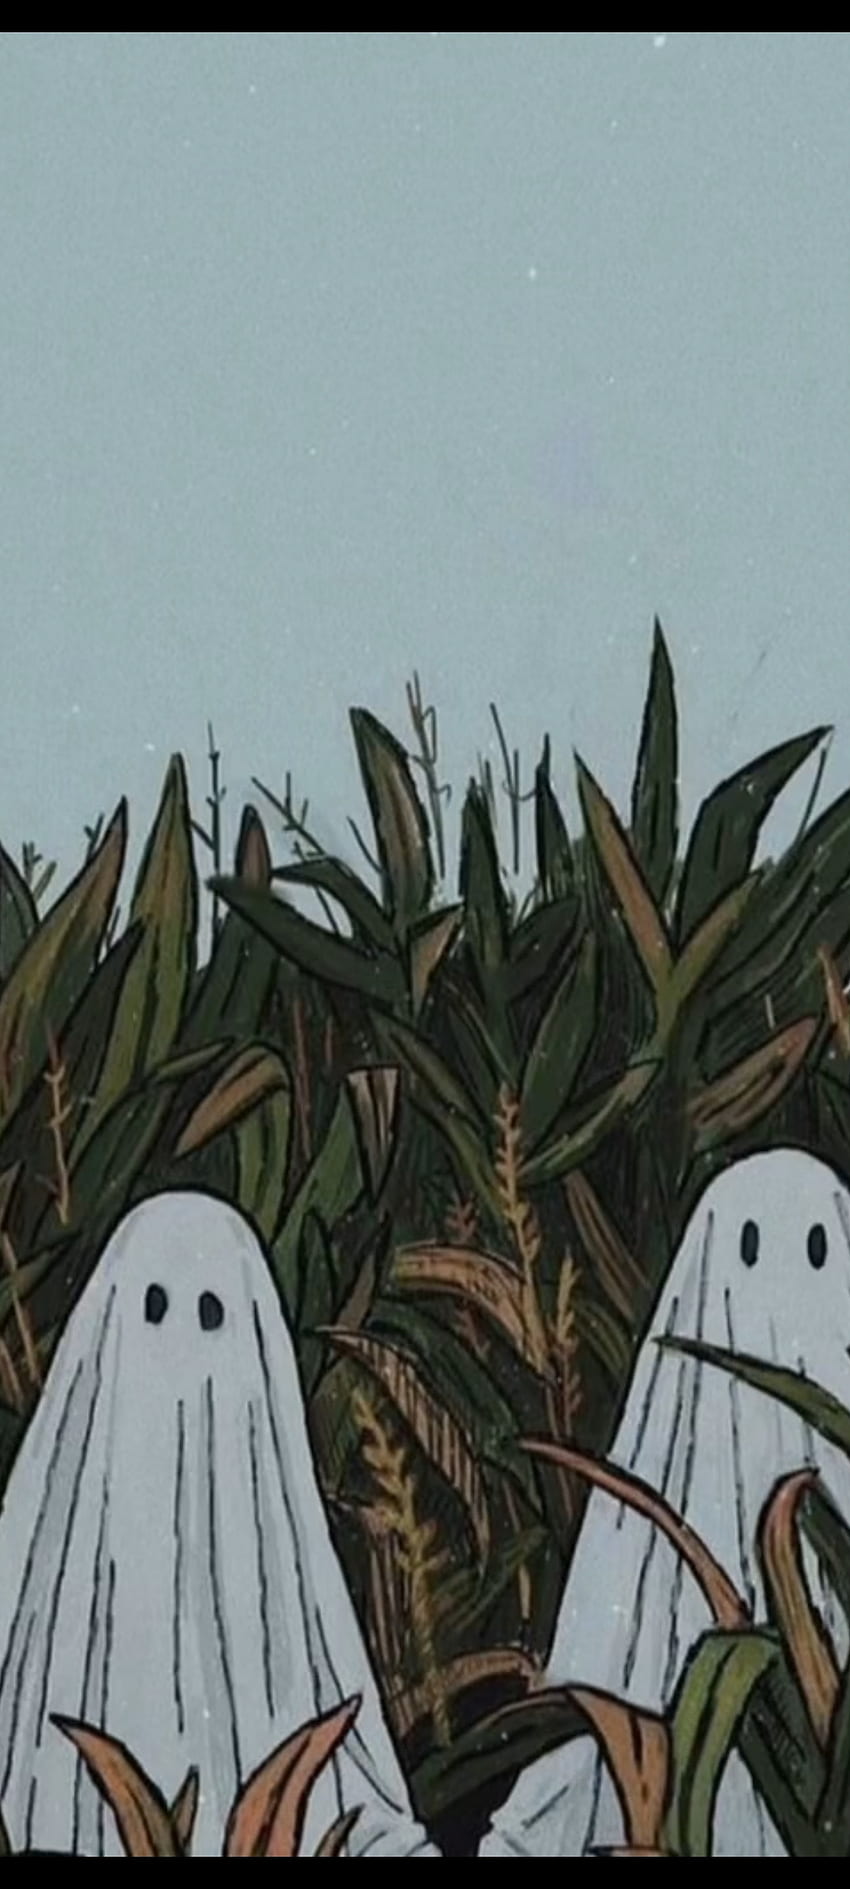 Fantasmas em um milharal, halloween, fantasma Papel de parede de celular HD